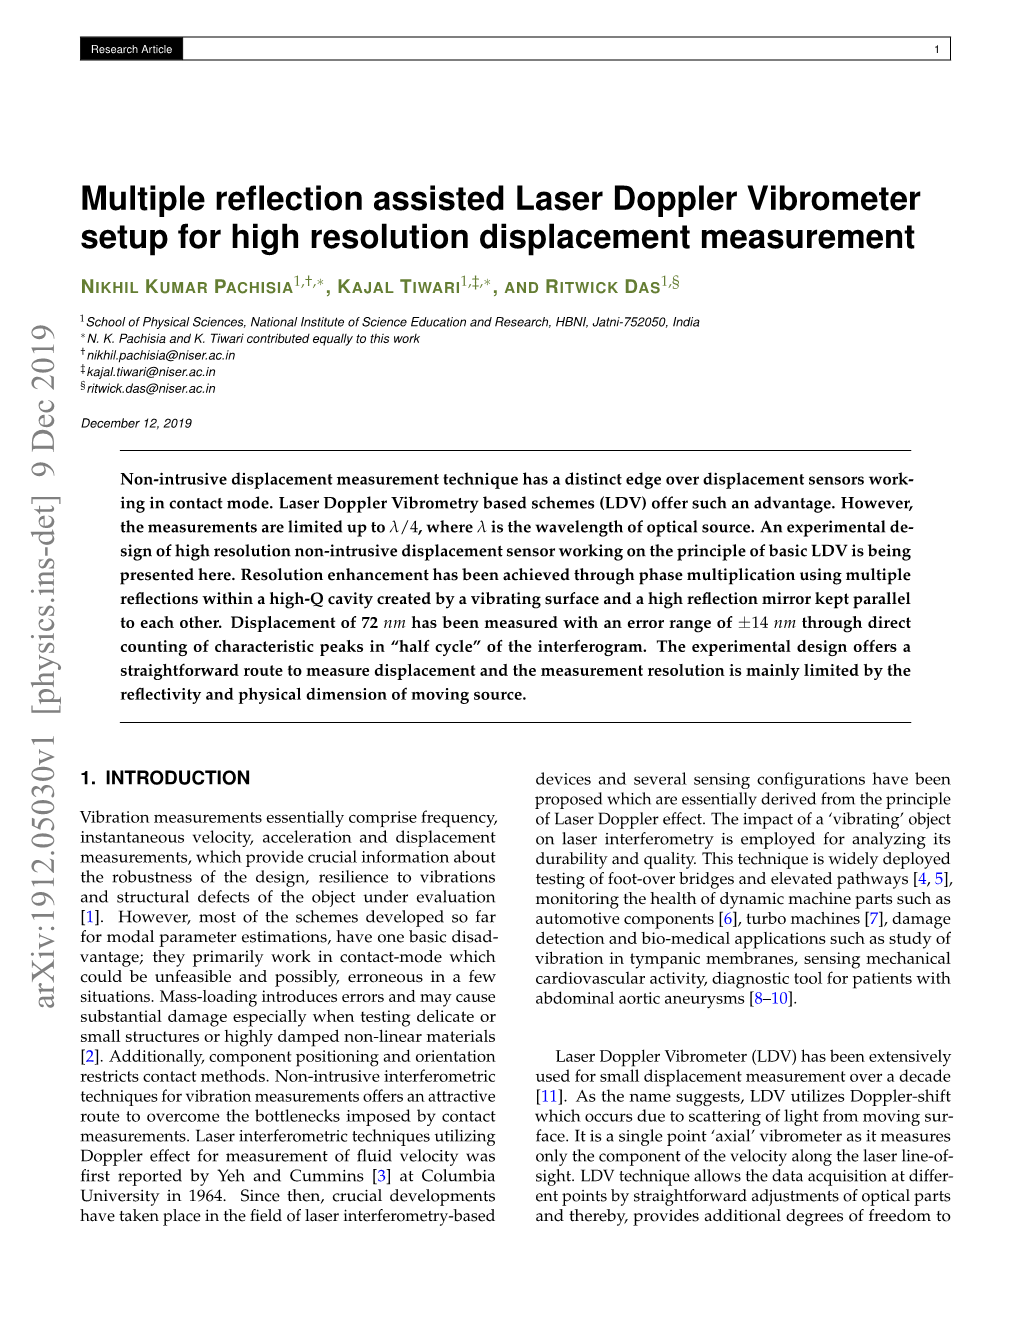 Multiple Reflection Assisted Laser Doppler Vibrometer Setup for High